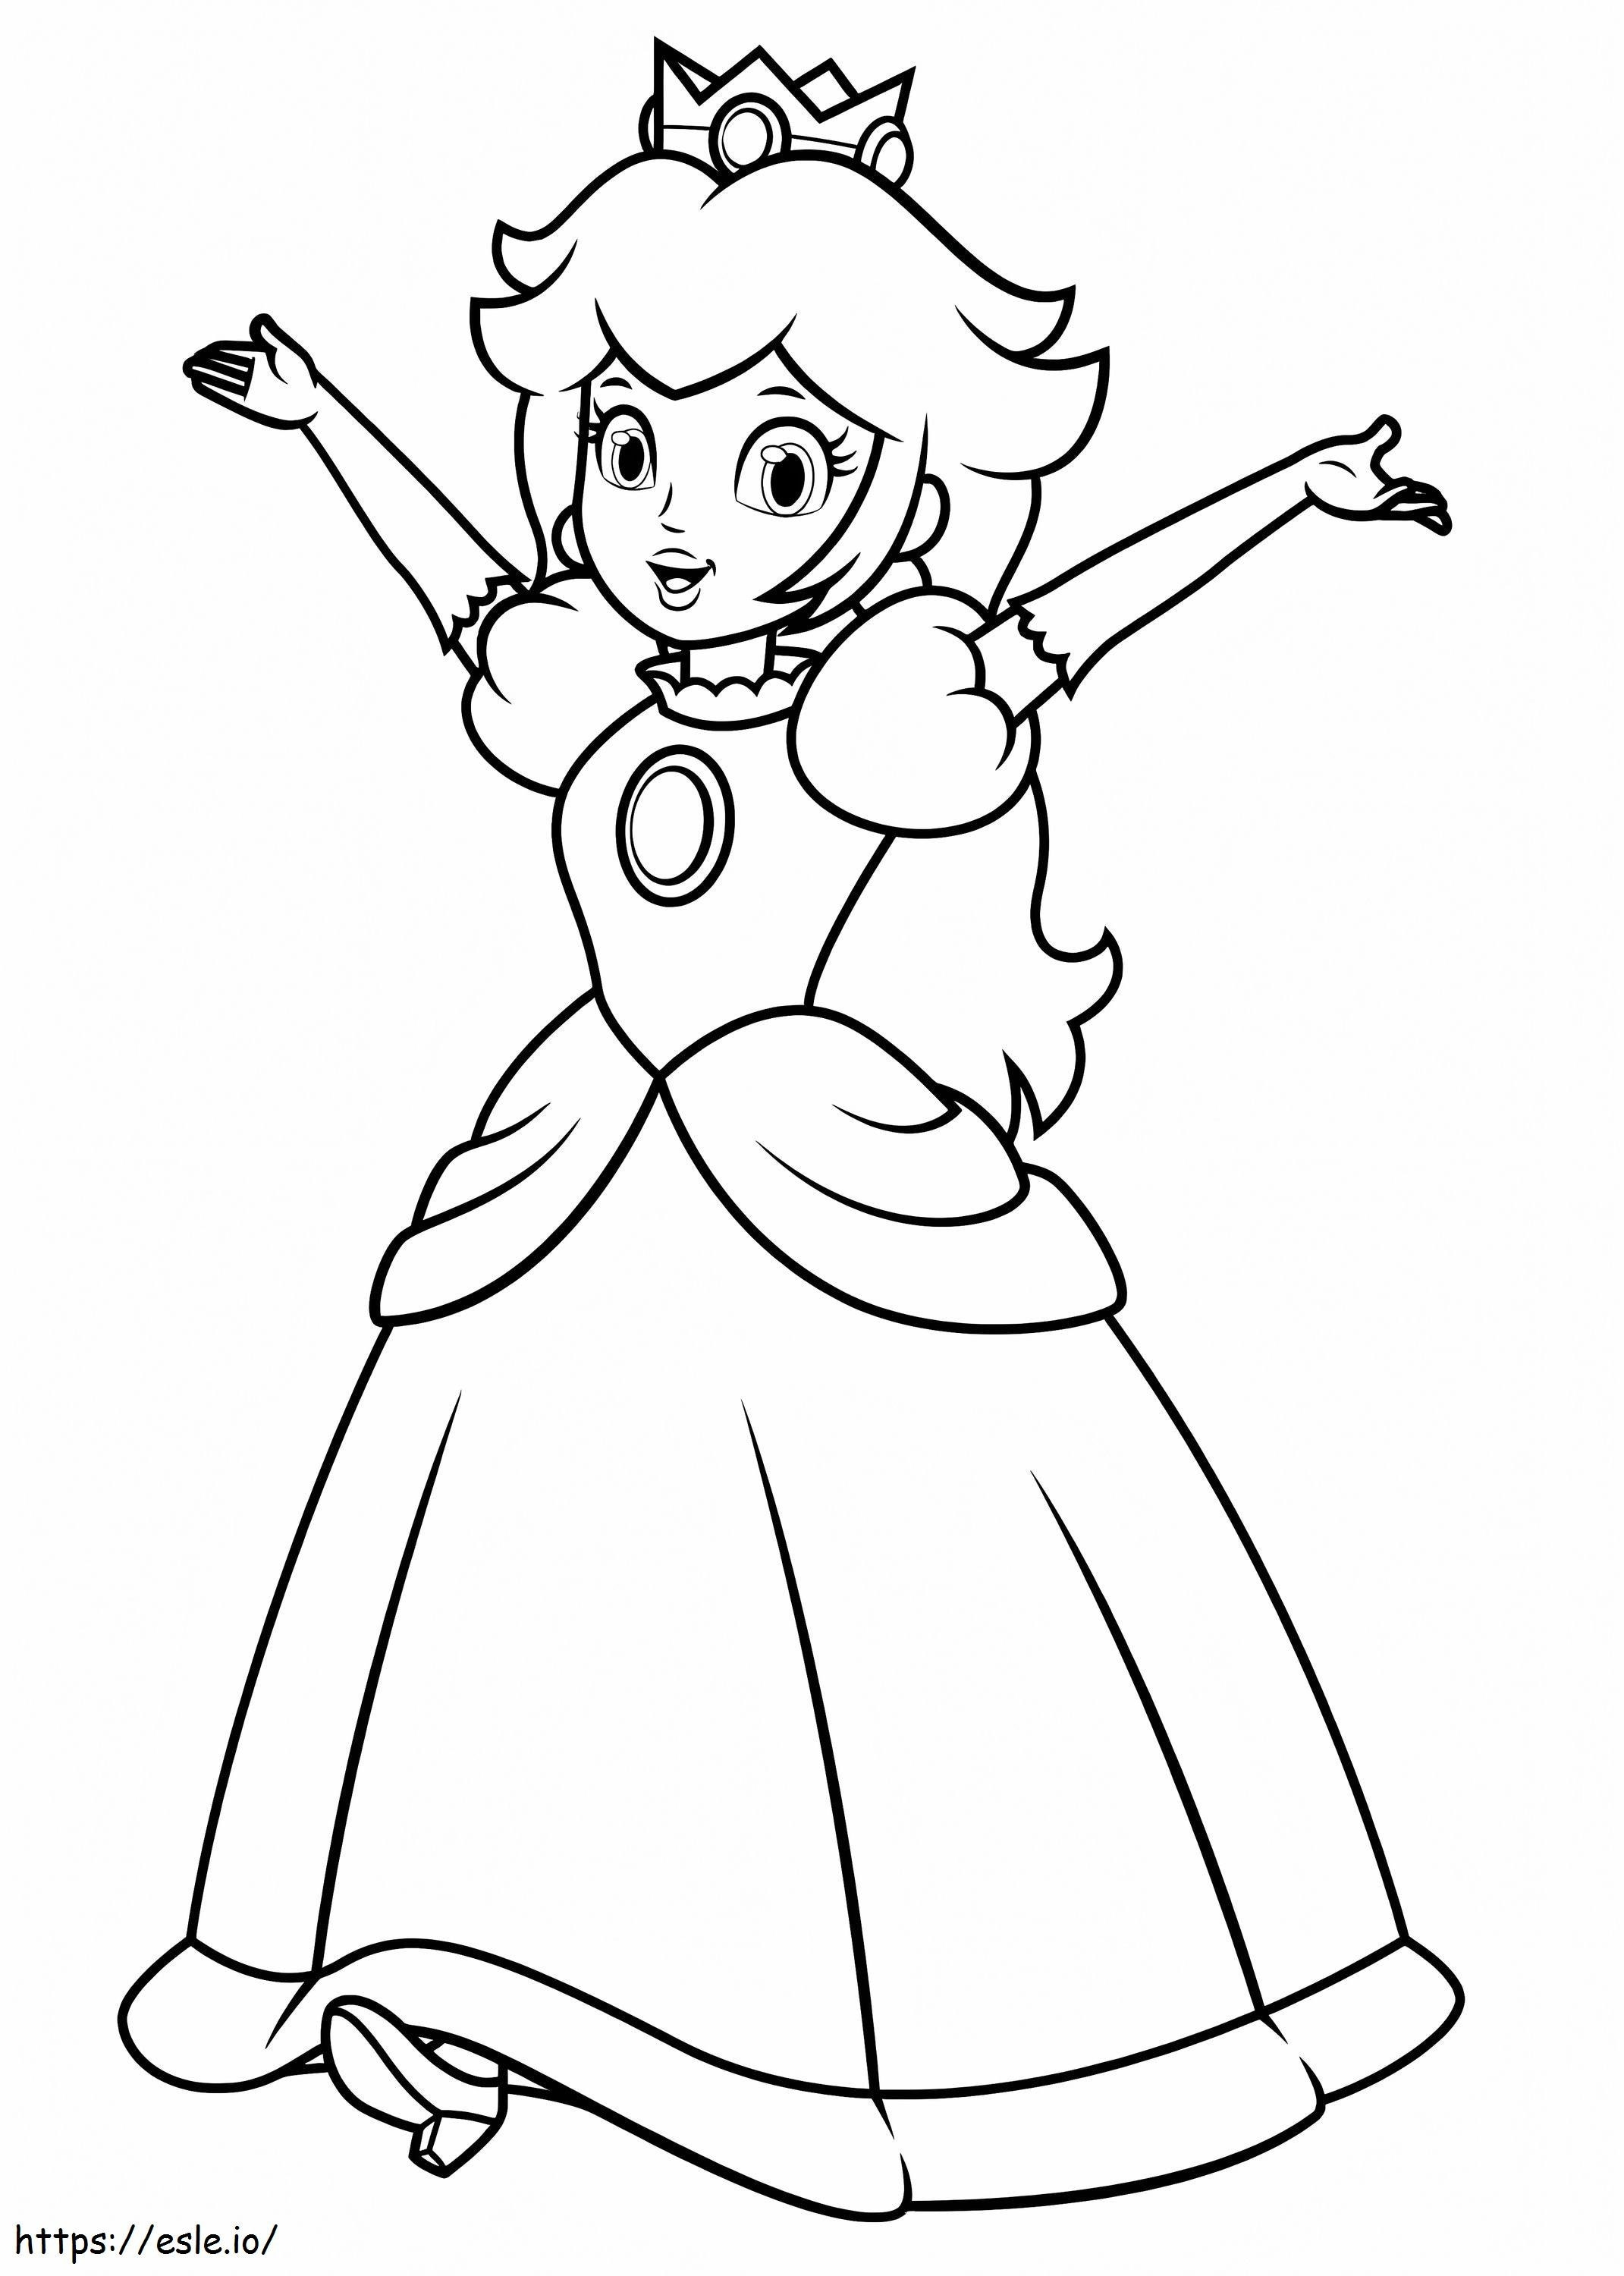 Princesa Peach Normal coloring page